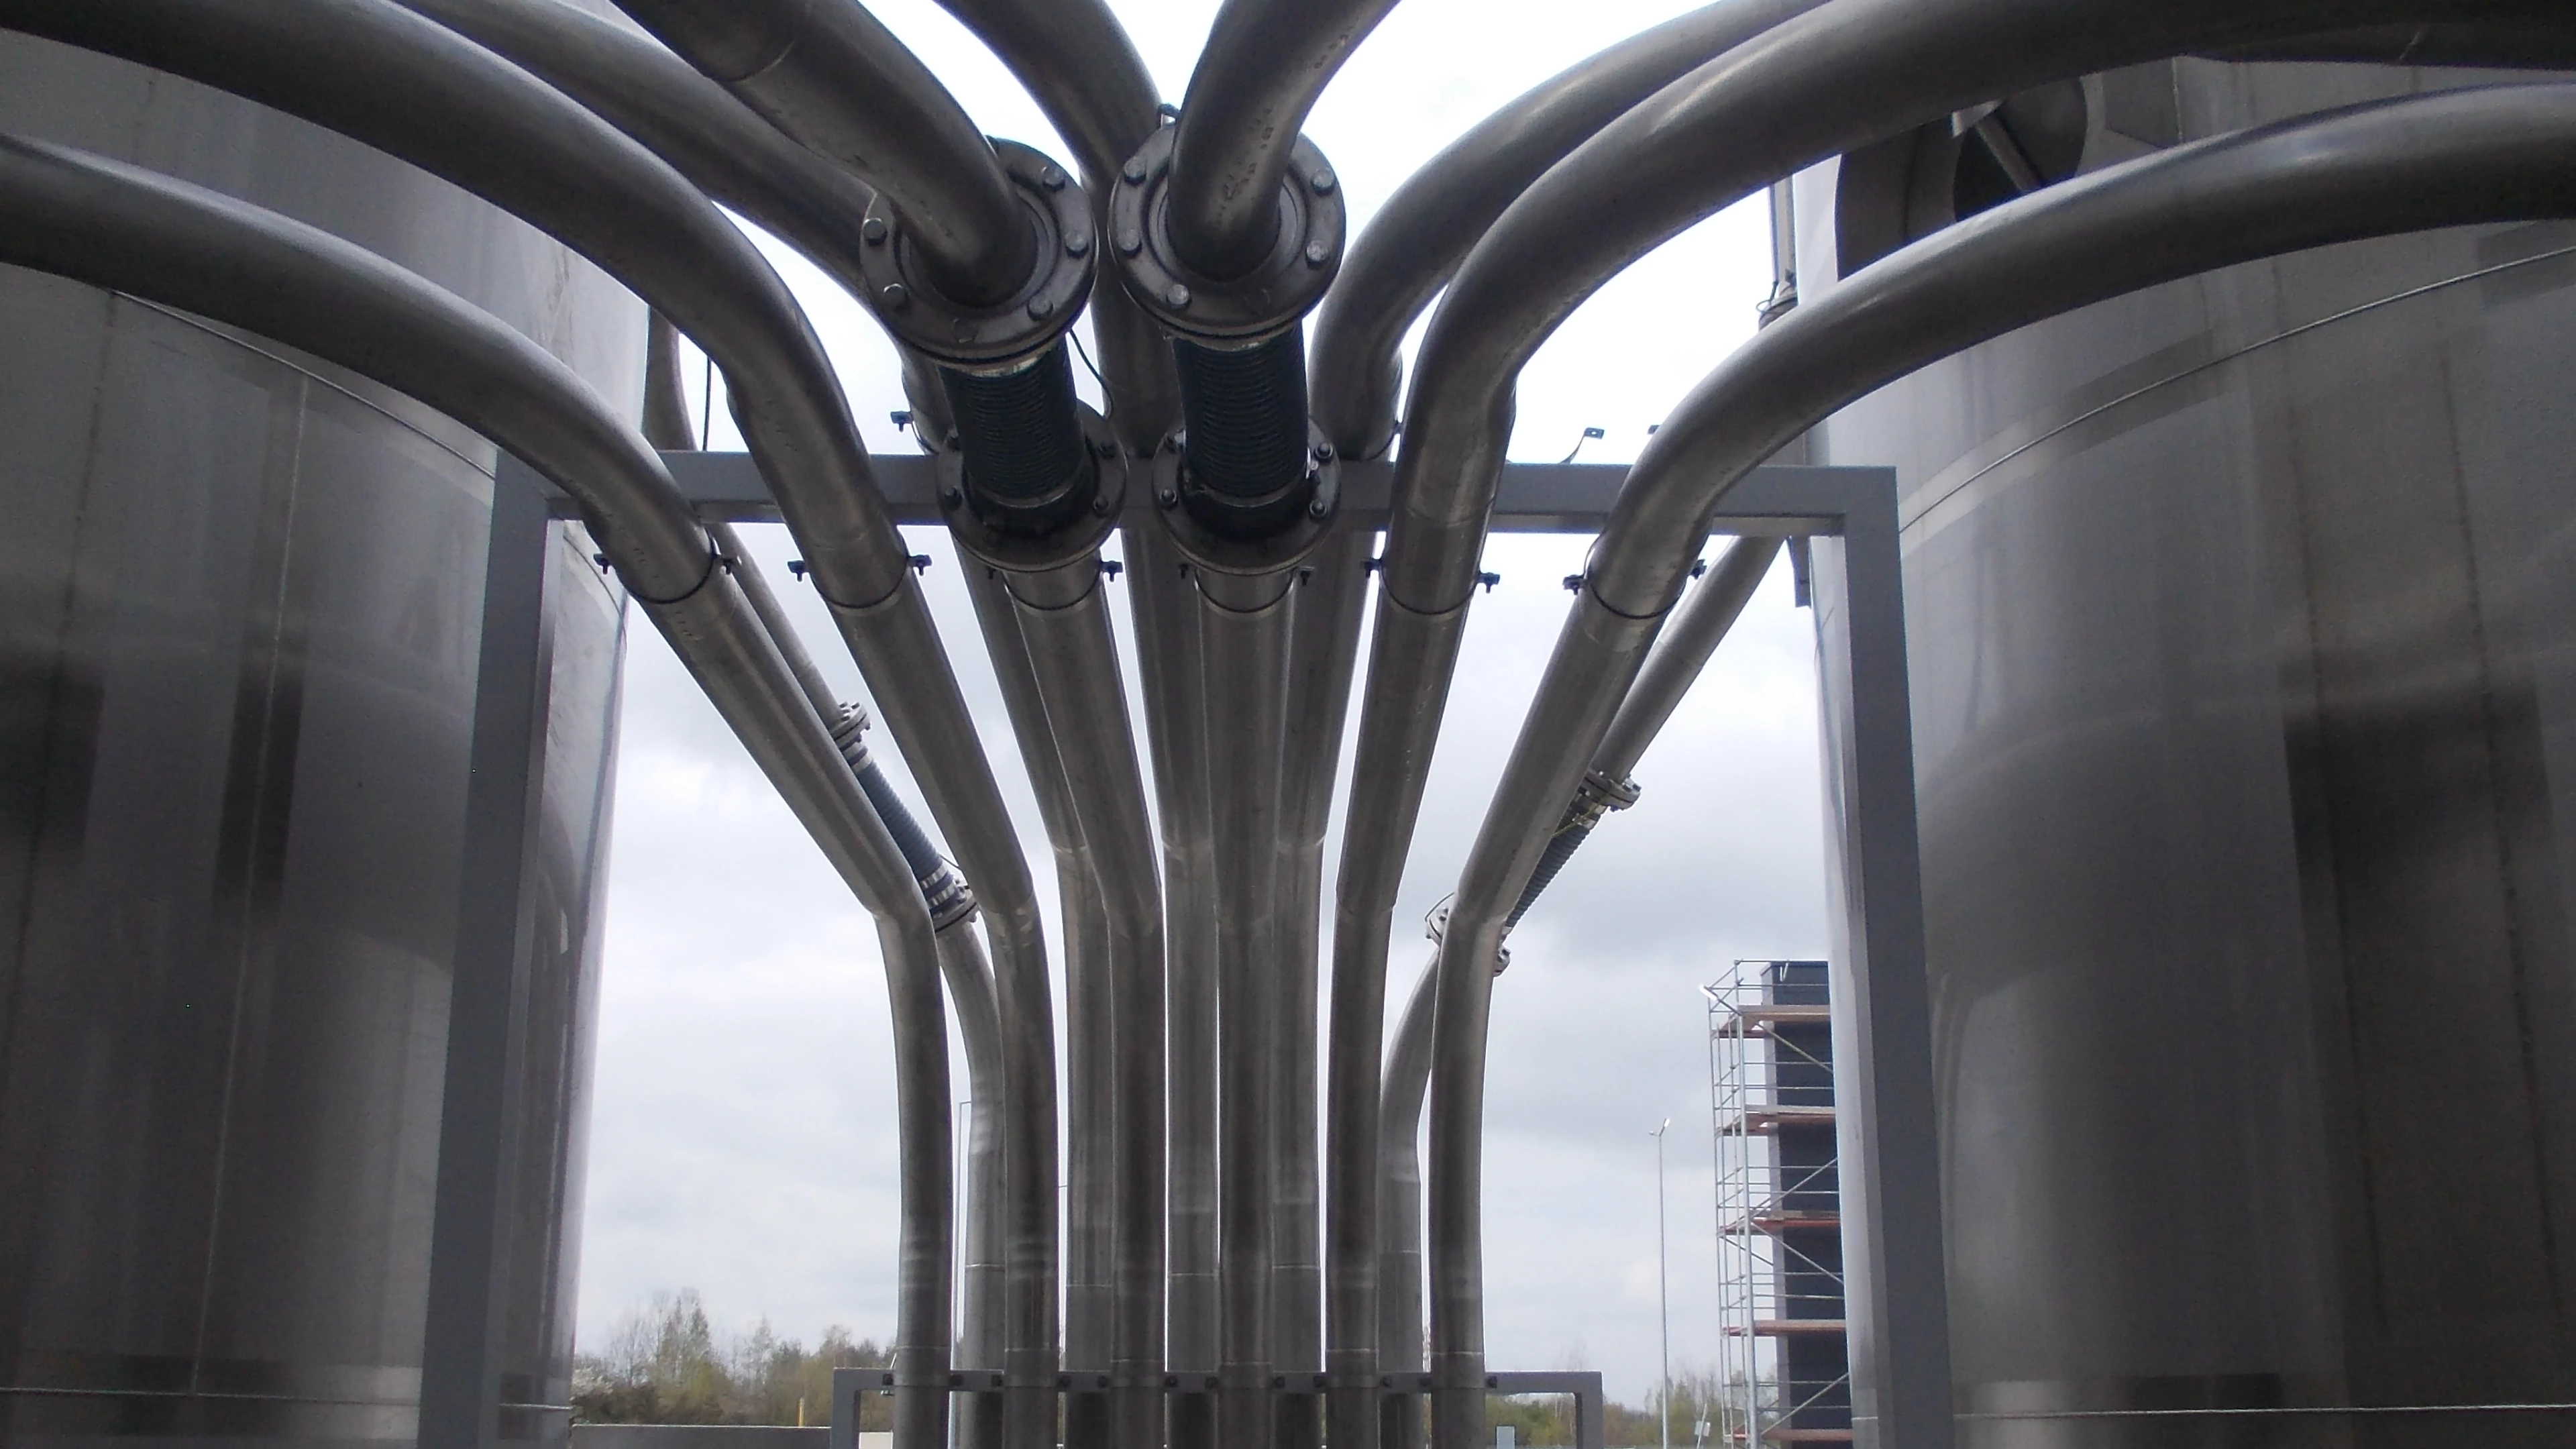 Tubagens entre tanques em aço inoxidável com ligações flexiveis - Indústria Química